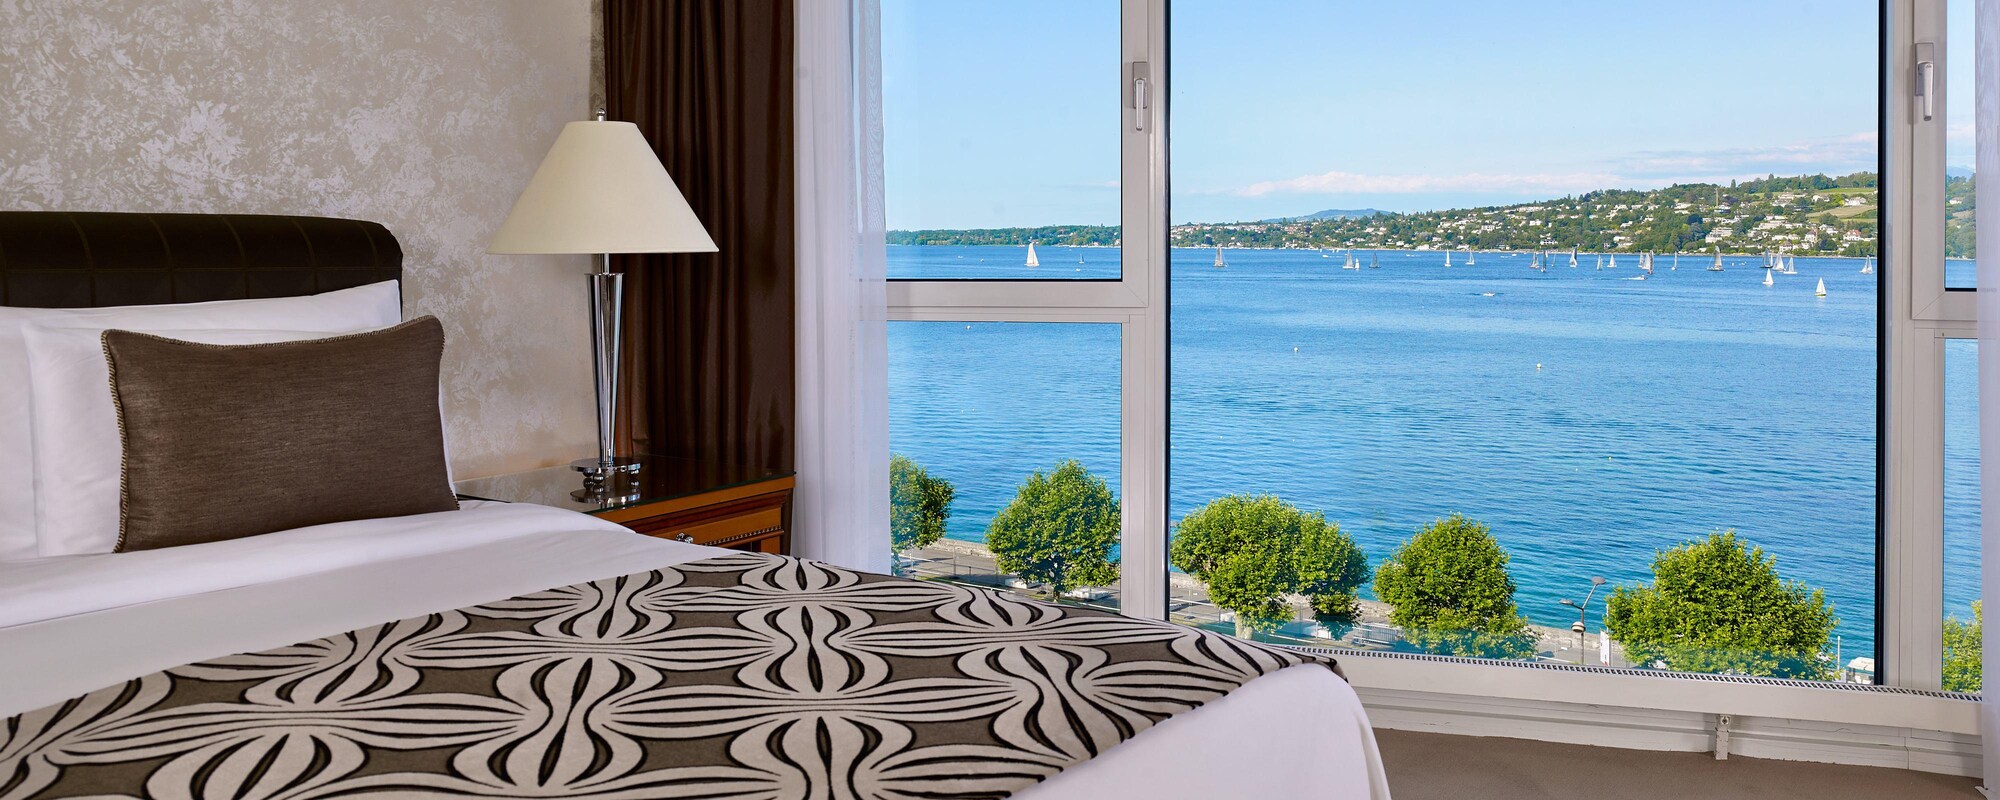 Zürichi hotelek, Svájc | Ajánlatok HUF-tól/éjszaka | elak.hu